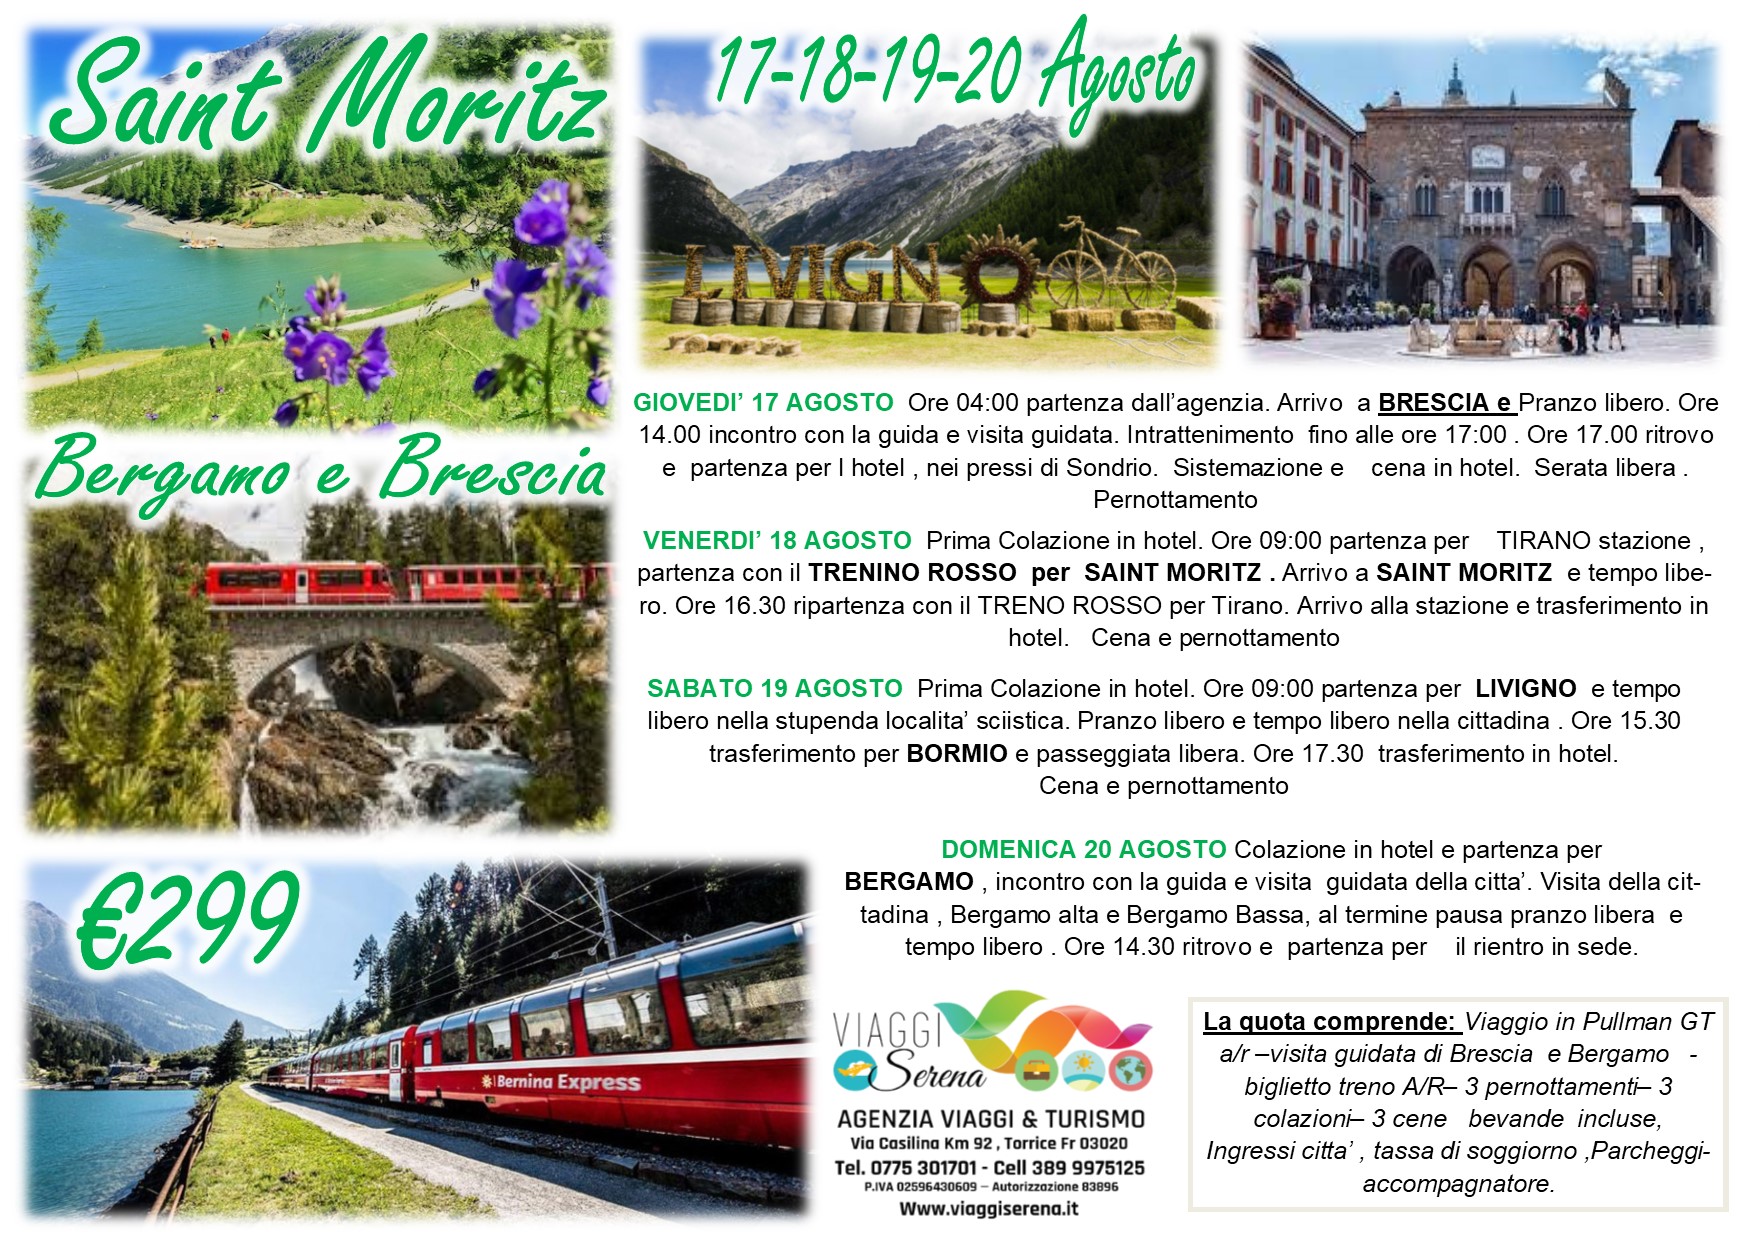 Viaggi di Gruppo: Trenino Rosso del Bernina “Saint Moritz” Brescia, Livigno & Bergamo 17-18-19 Agosto  €299,00